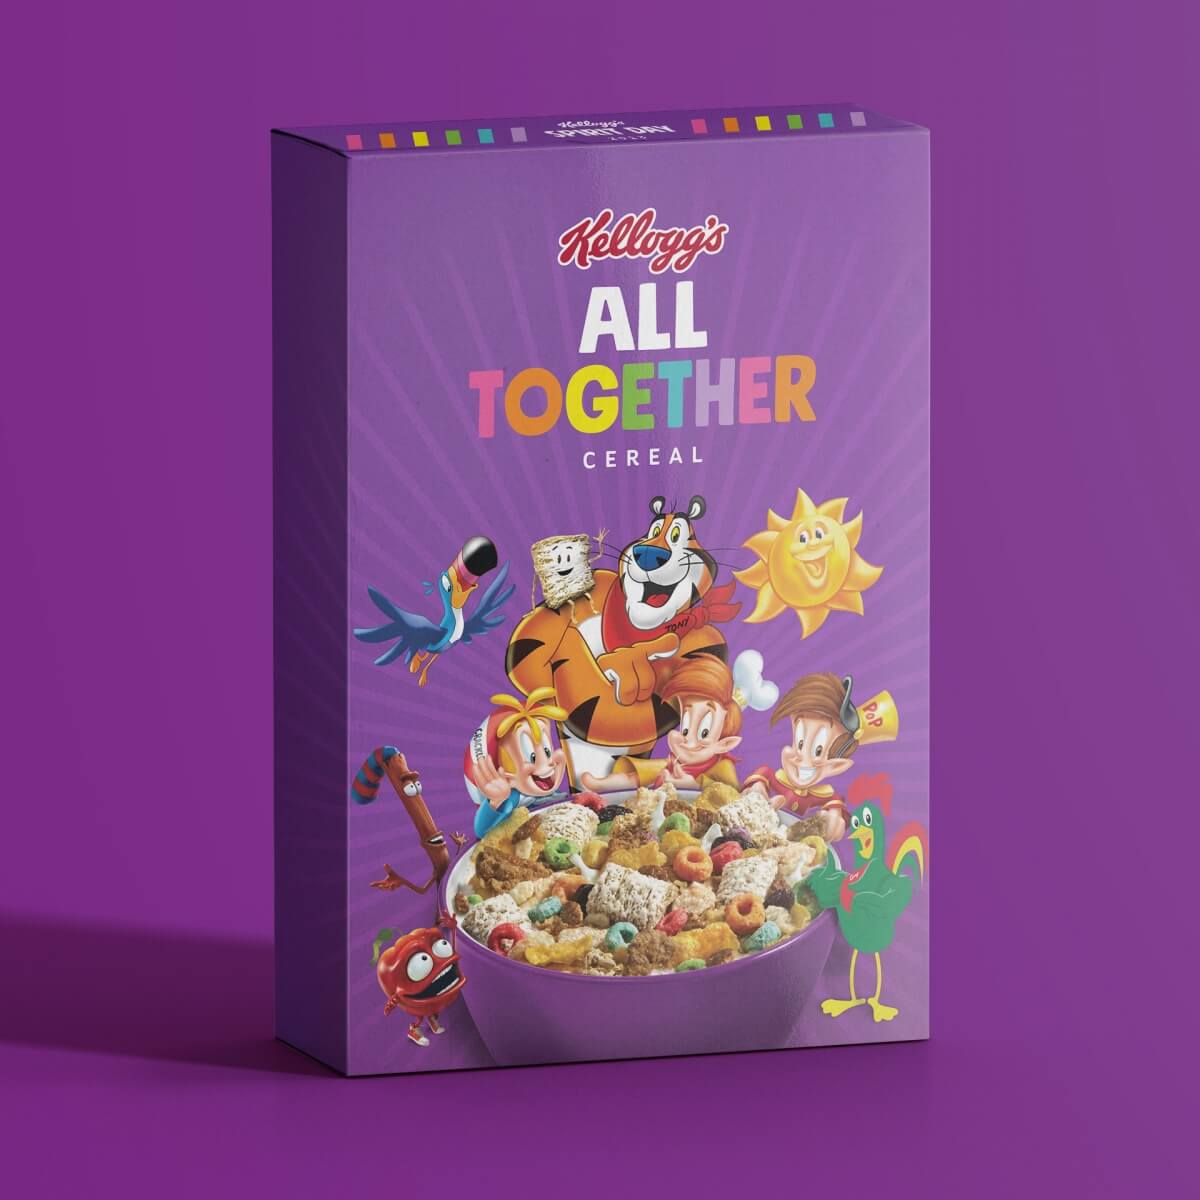 Cereal de KElloggs All Together para el SpriritDay